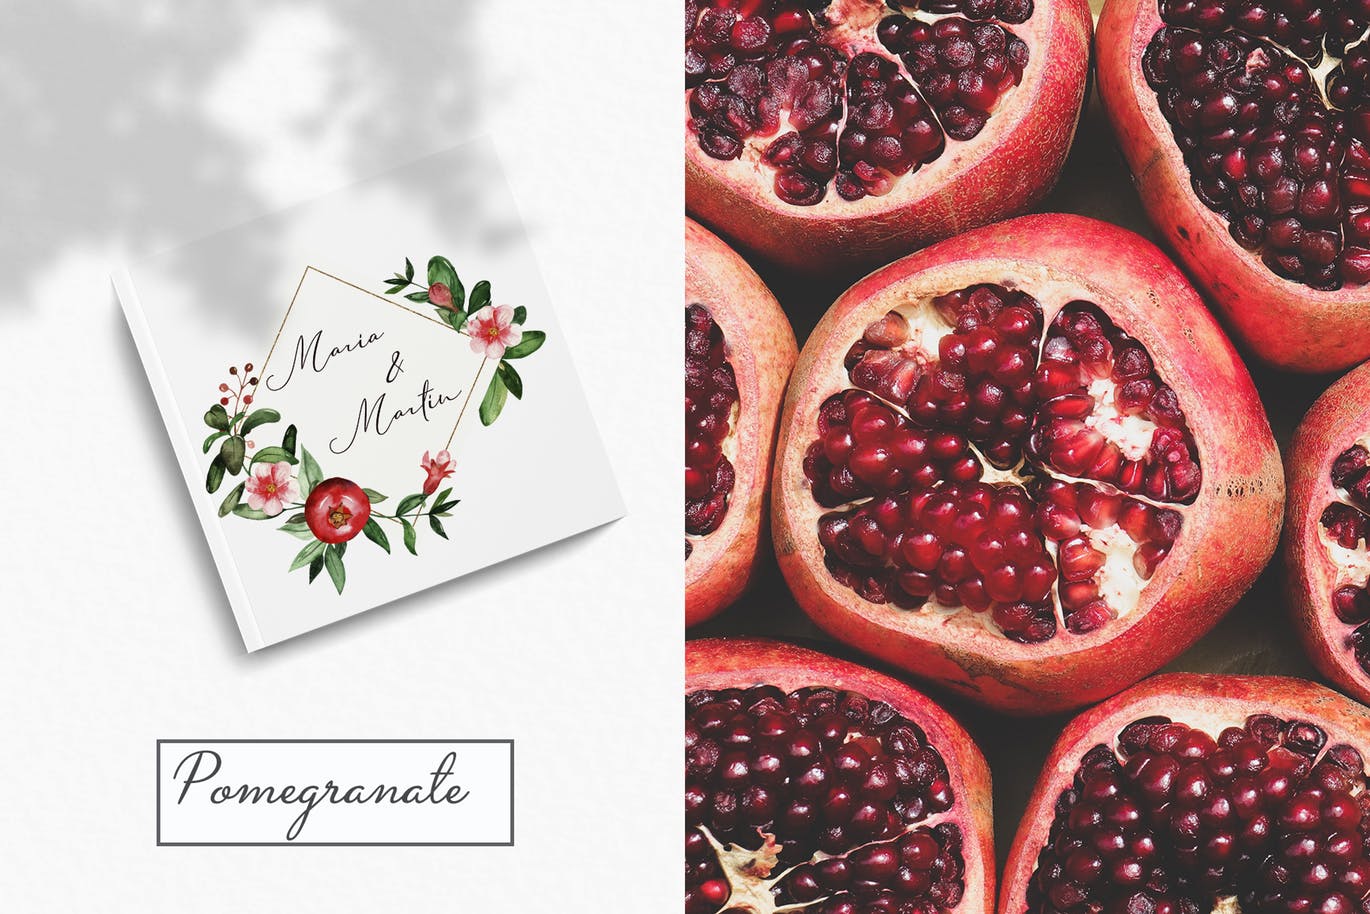 水彩石榴剪贴画/花框/花环素材库精选设计素材 Watercolor pomegranate. Clipart, frames, wreaths插图(9)